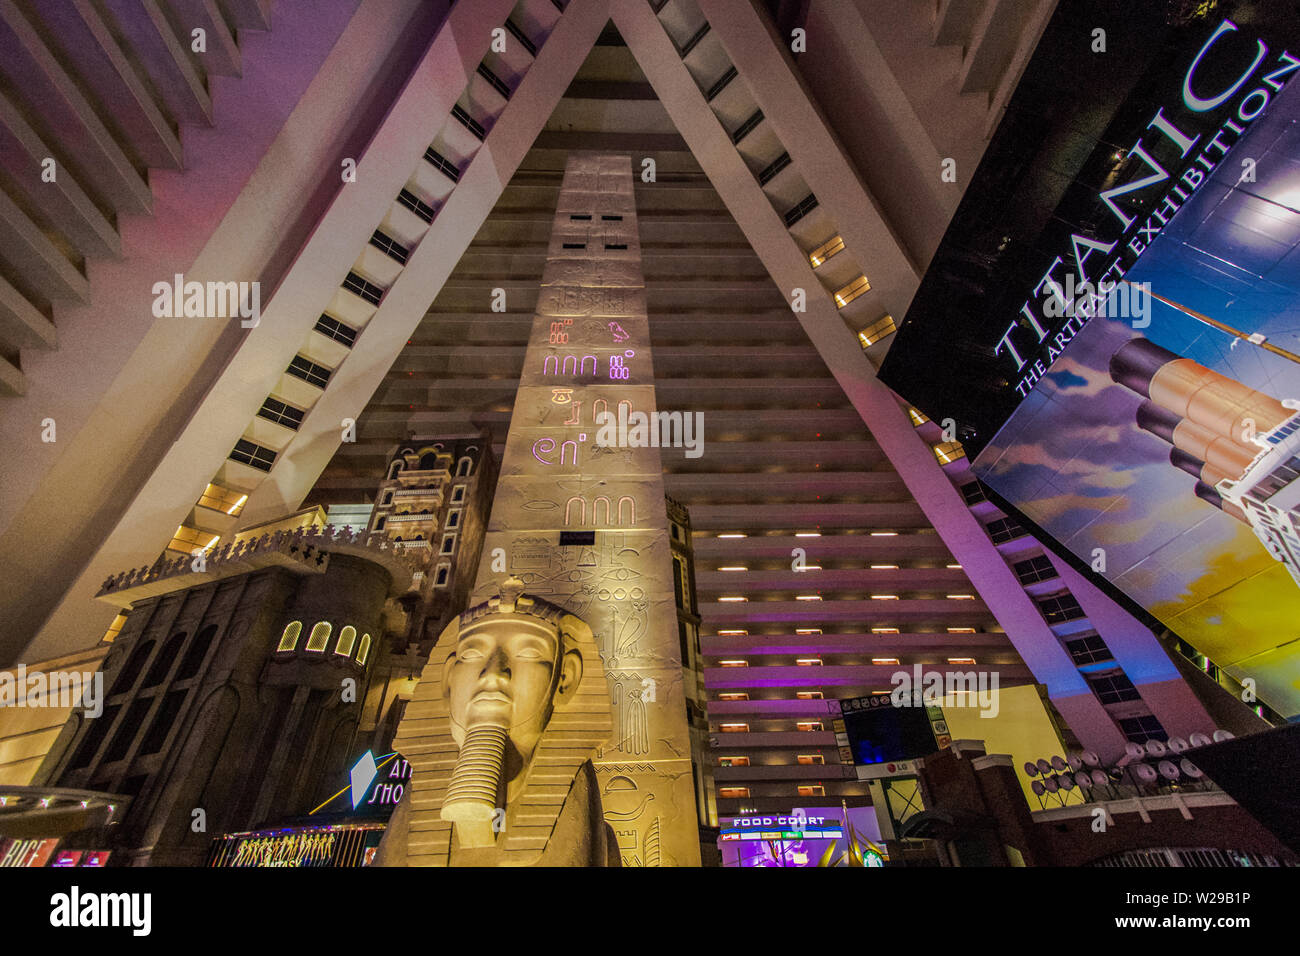 Das Atrium in der Luxor Hotel in Las Vegas. Das Luxor Ansprüche dem größten Atrium der Welt mit 29 Mio. Kubikmeter zu haben. Stockfoto